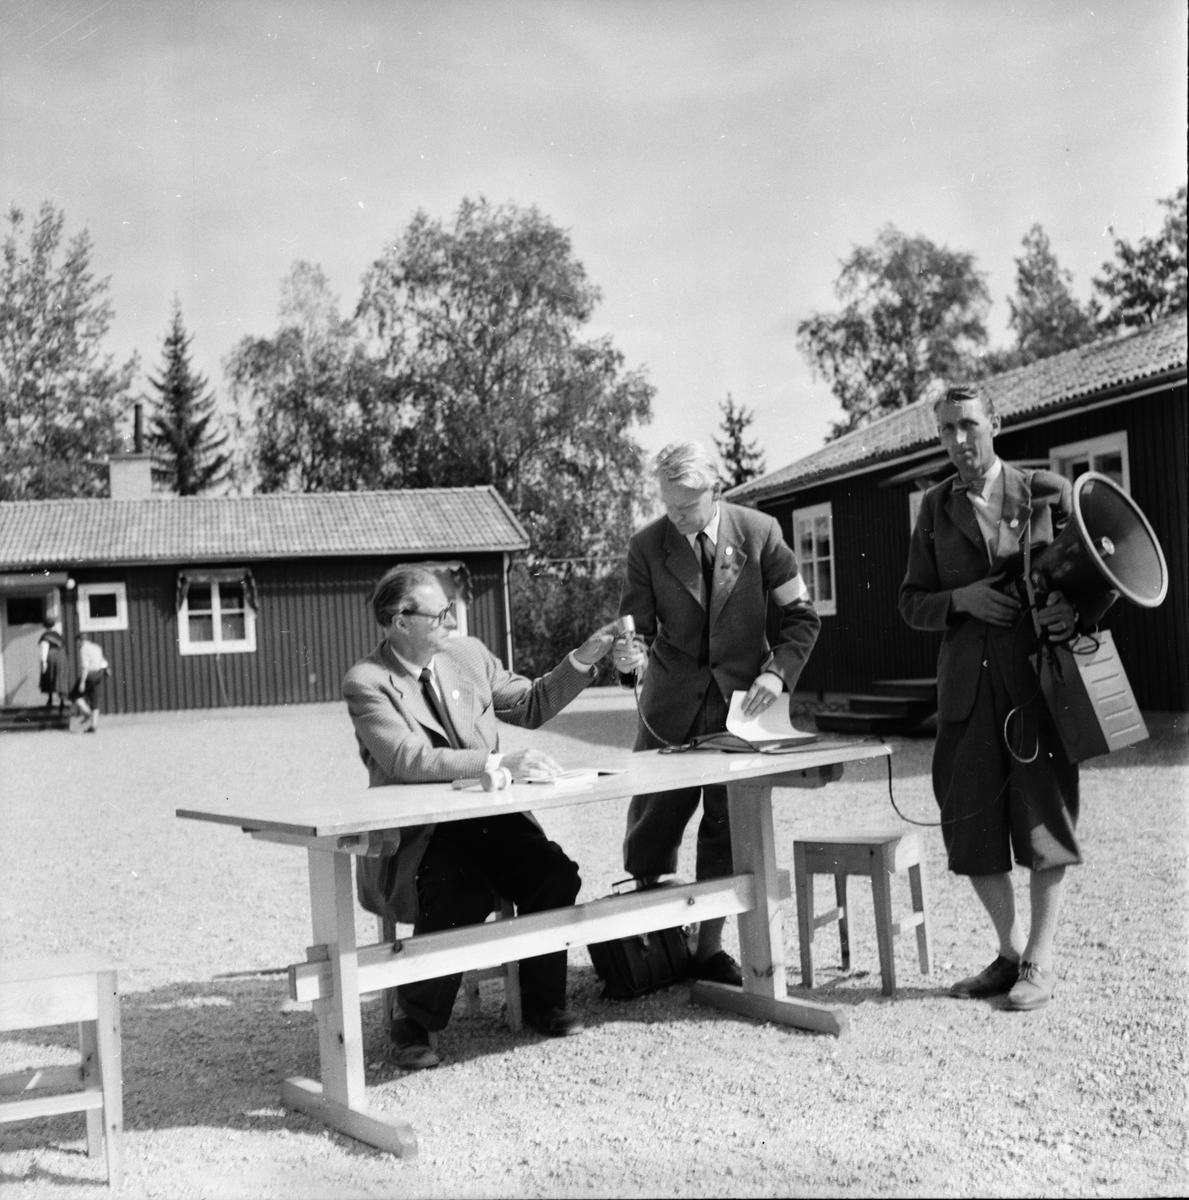 Skogsvårdsförbundet. Norrlands exkursion.
1955